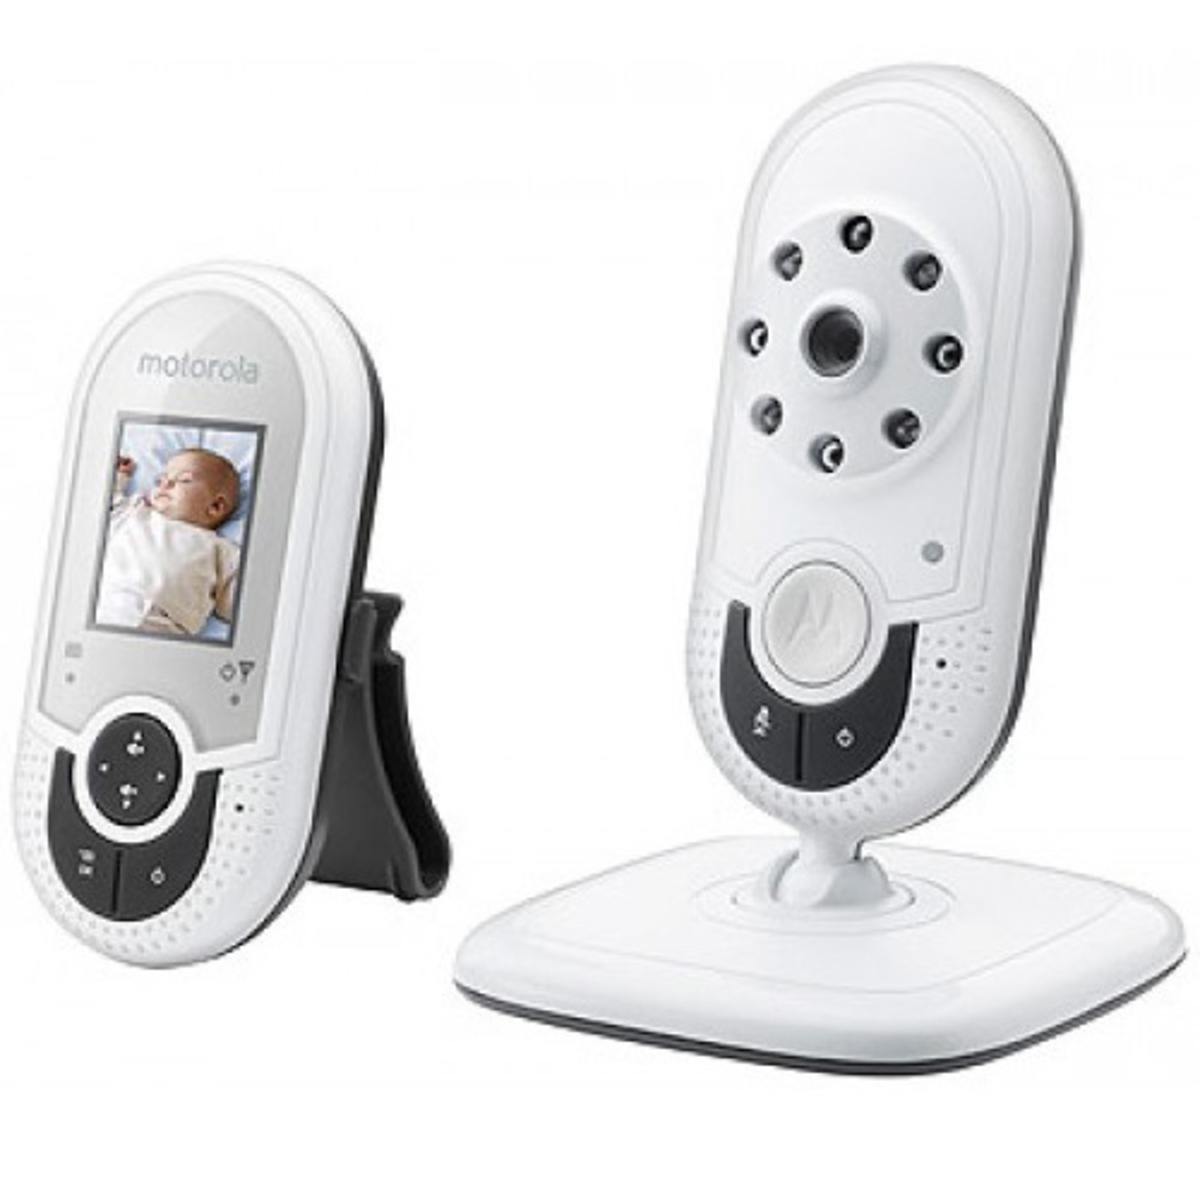 Motorola Video Baby Monitor MBP421